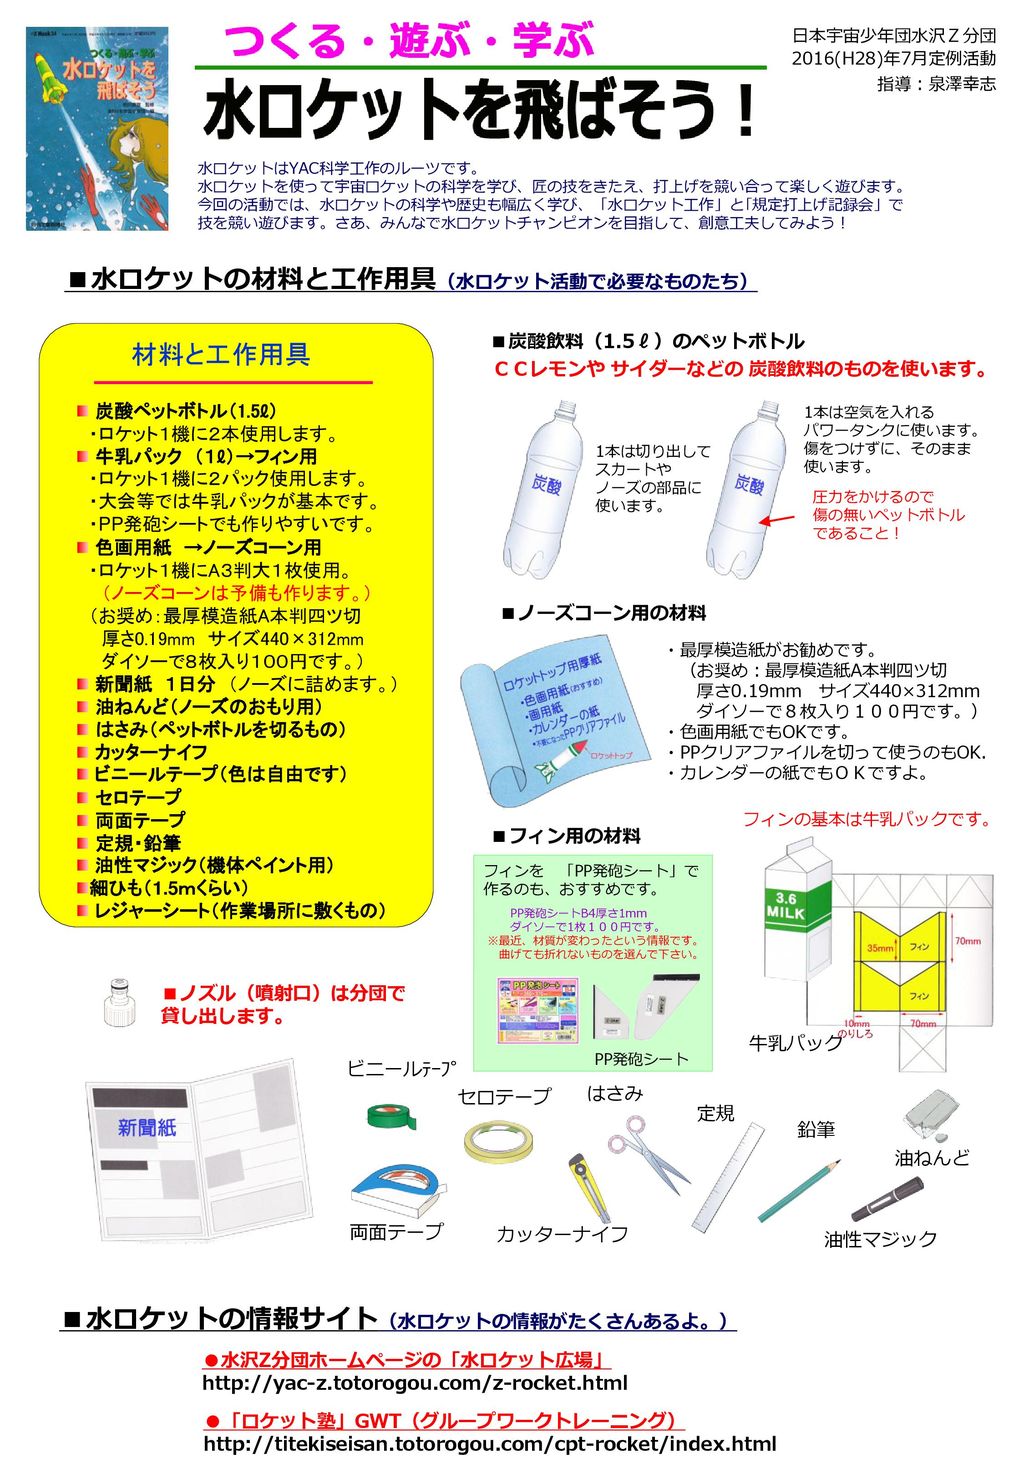 ■水ロケットの材料と工作用具（水ロケット活動で必要なものたち）